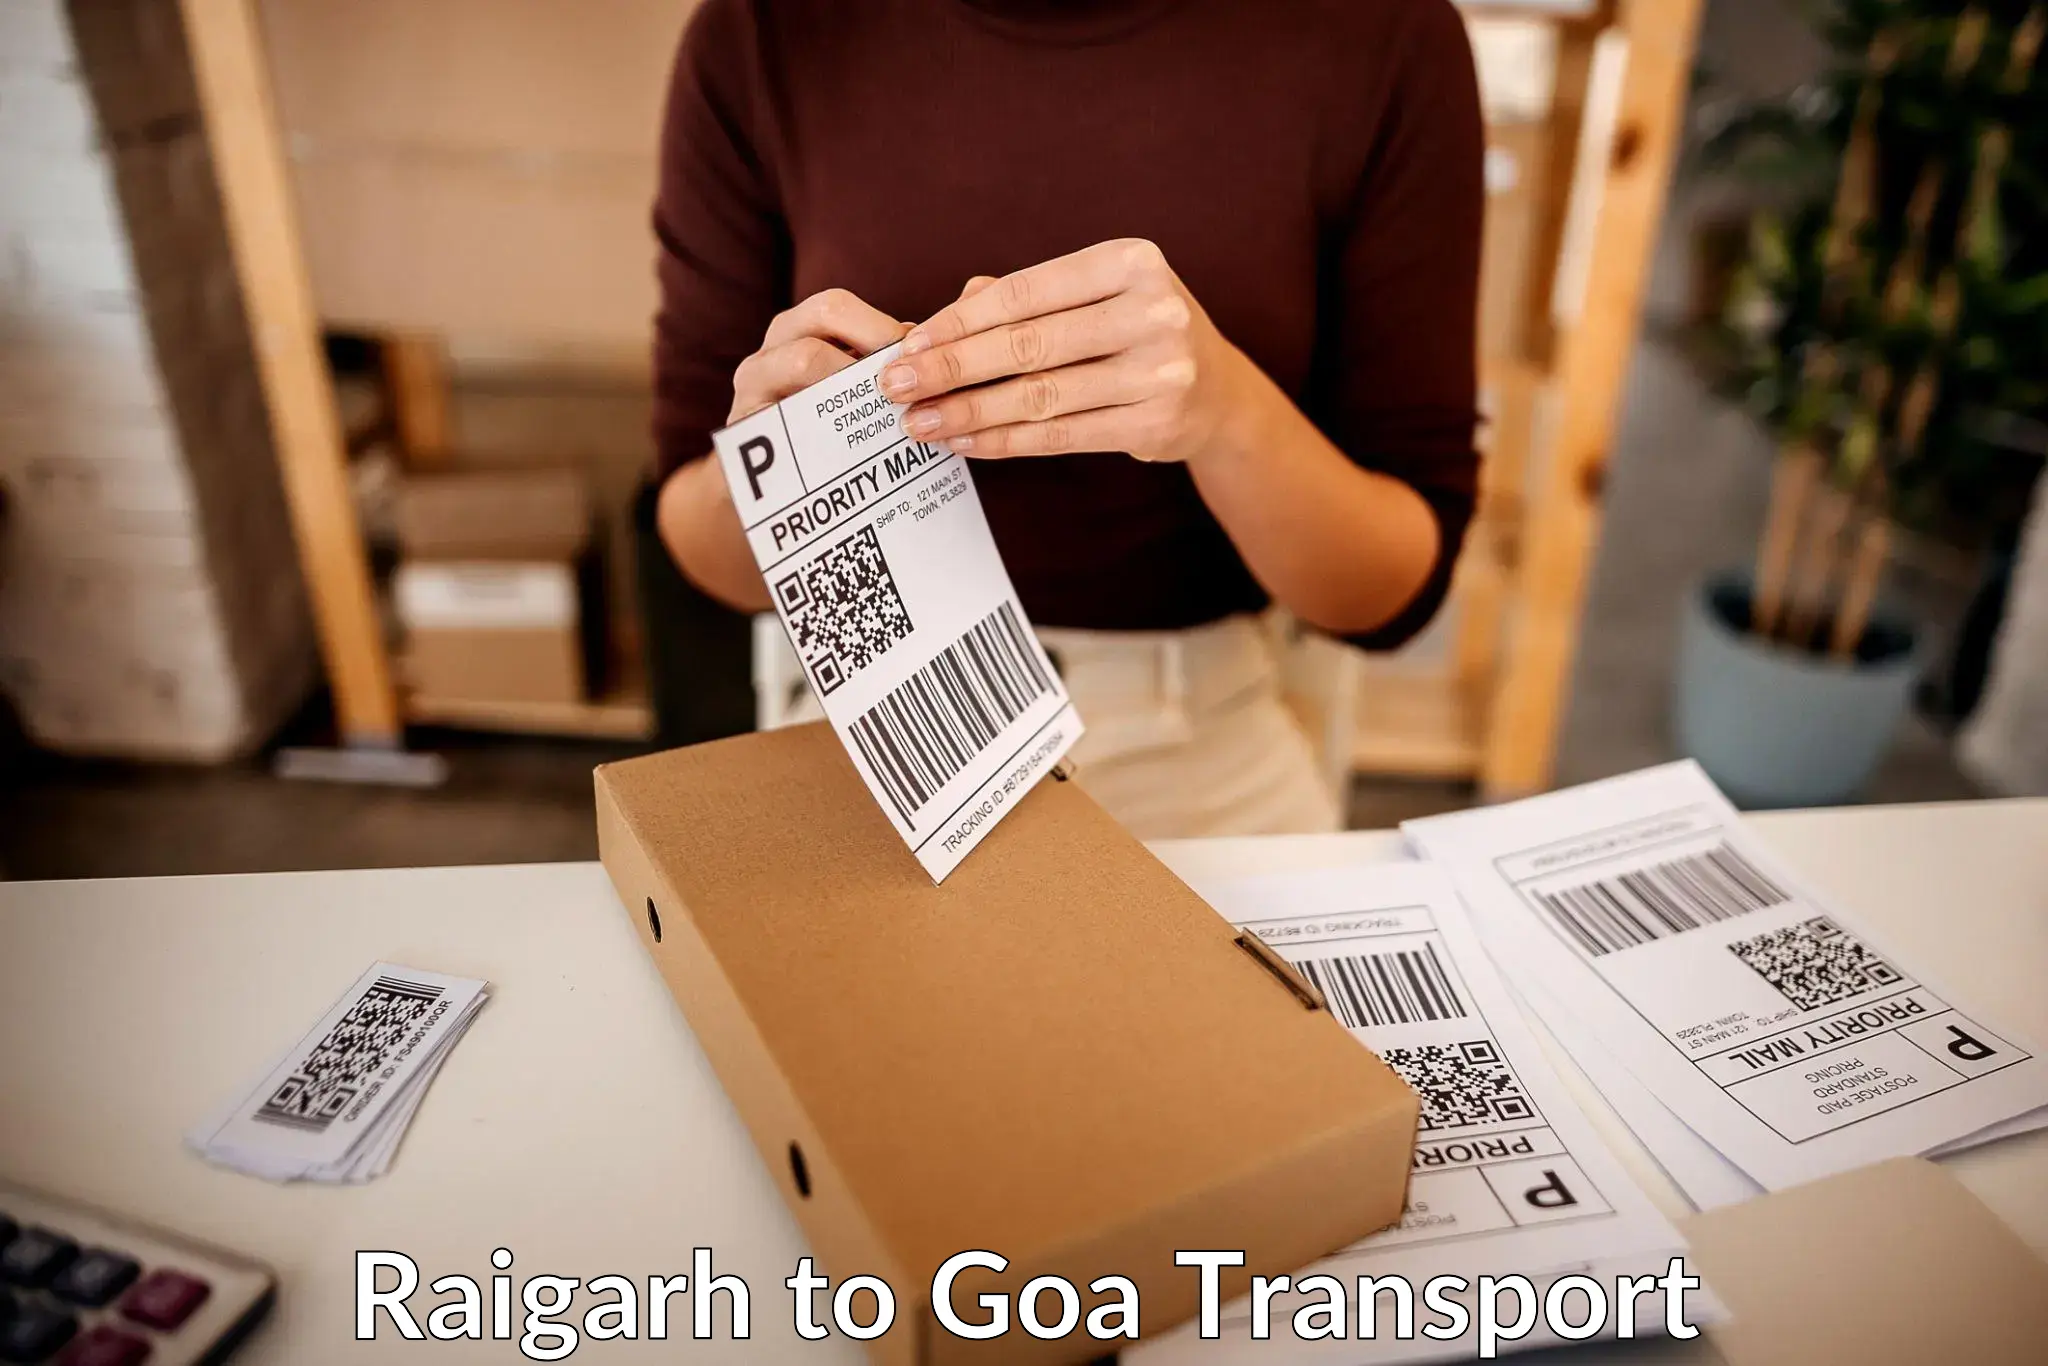 Transport in sharing Raigarh to Panjim